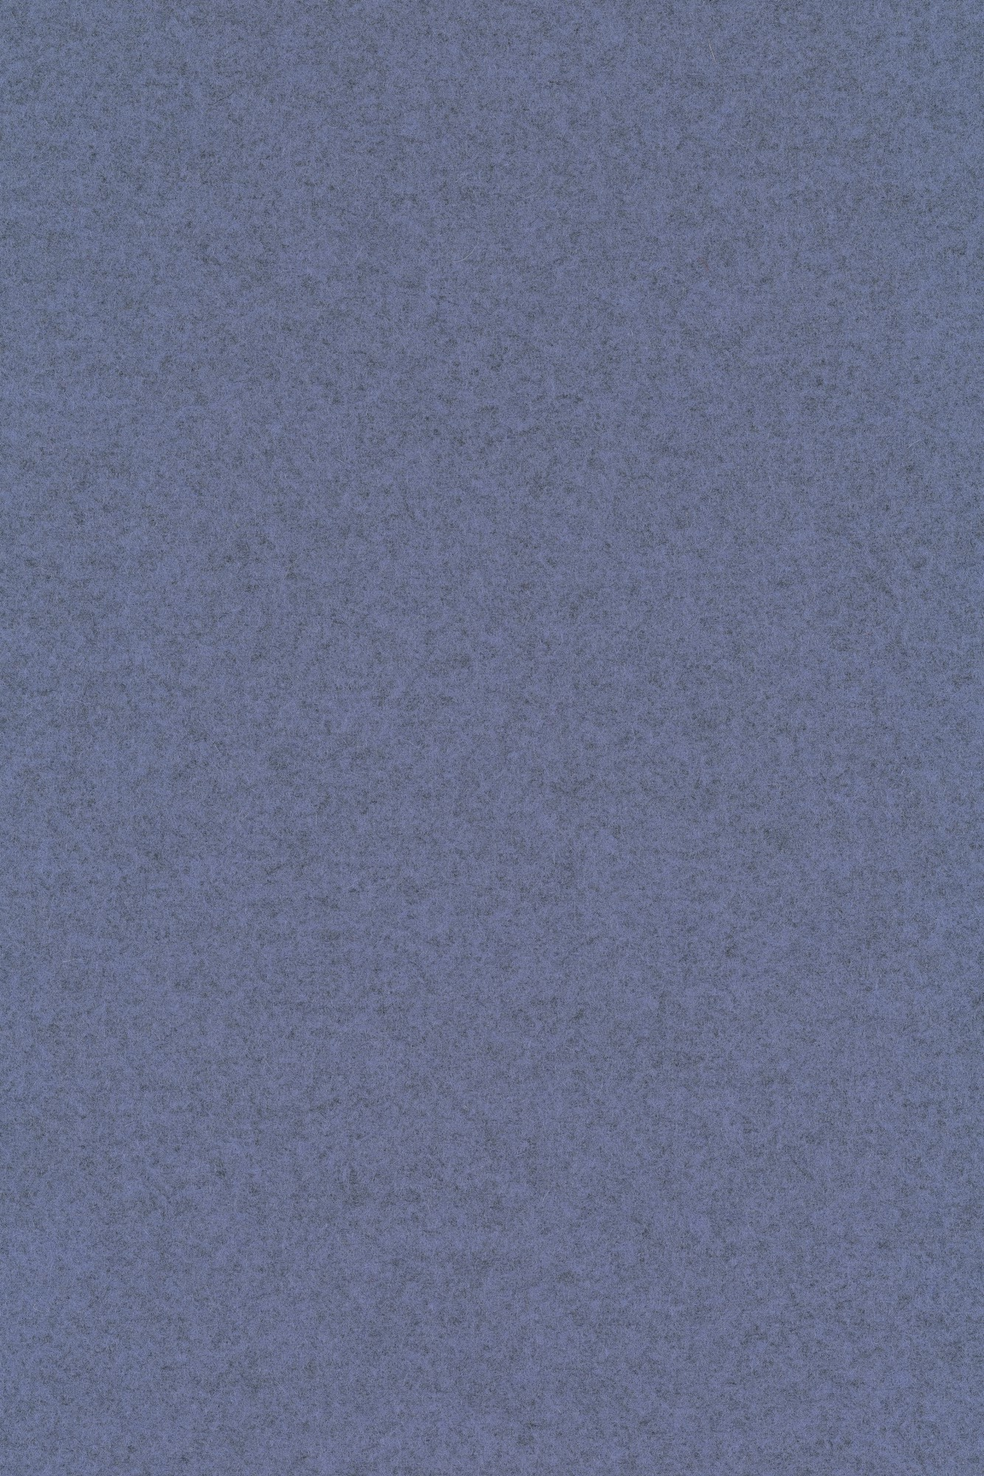 Fabric sample Divina Melange 3 647 blue